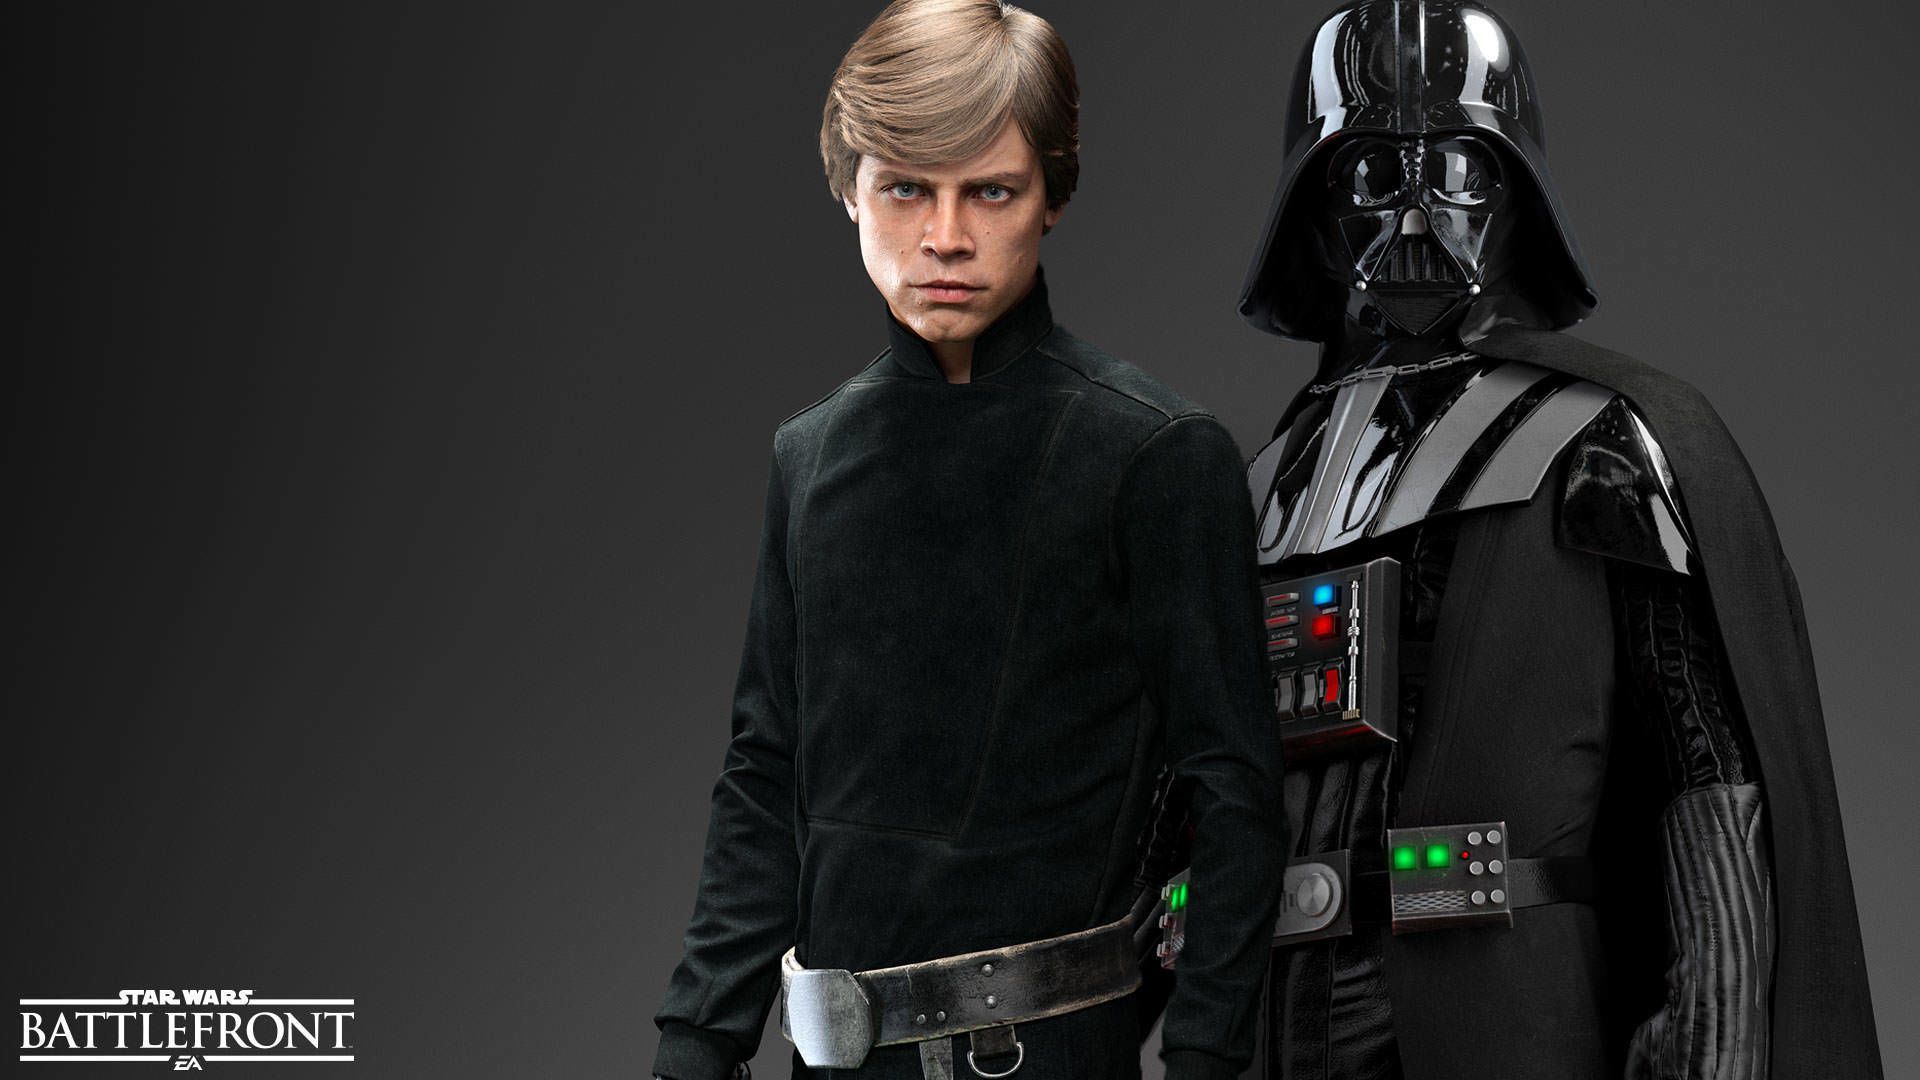 Darth Vader Vs Luke Skywalker / Star Wars Battlefront #StarWarsBattlefront #StarWa. Star wars characters picture, Star wars luke skywalker, Star wars background